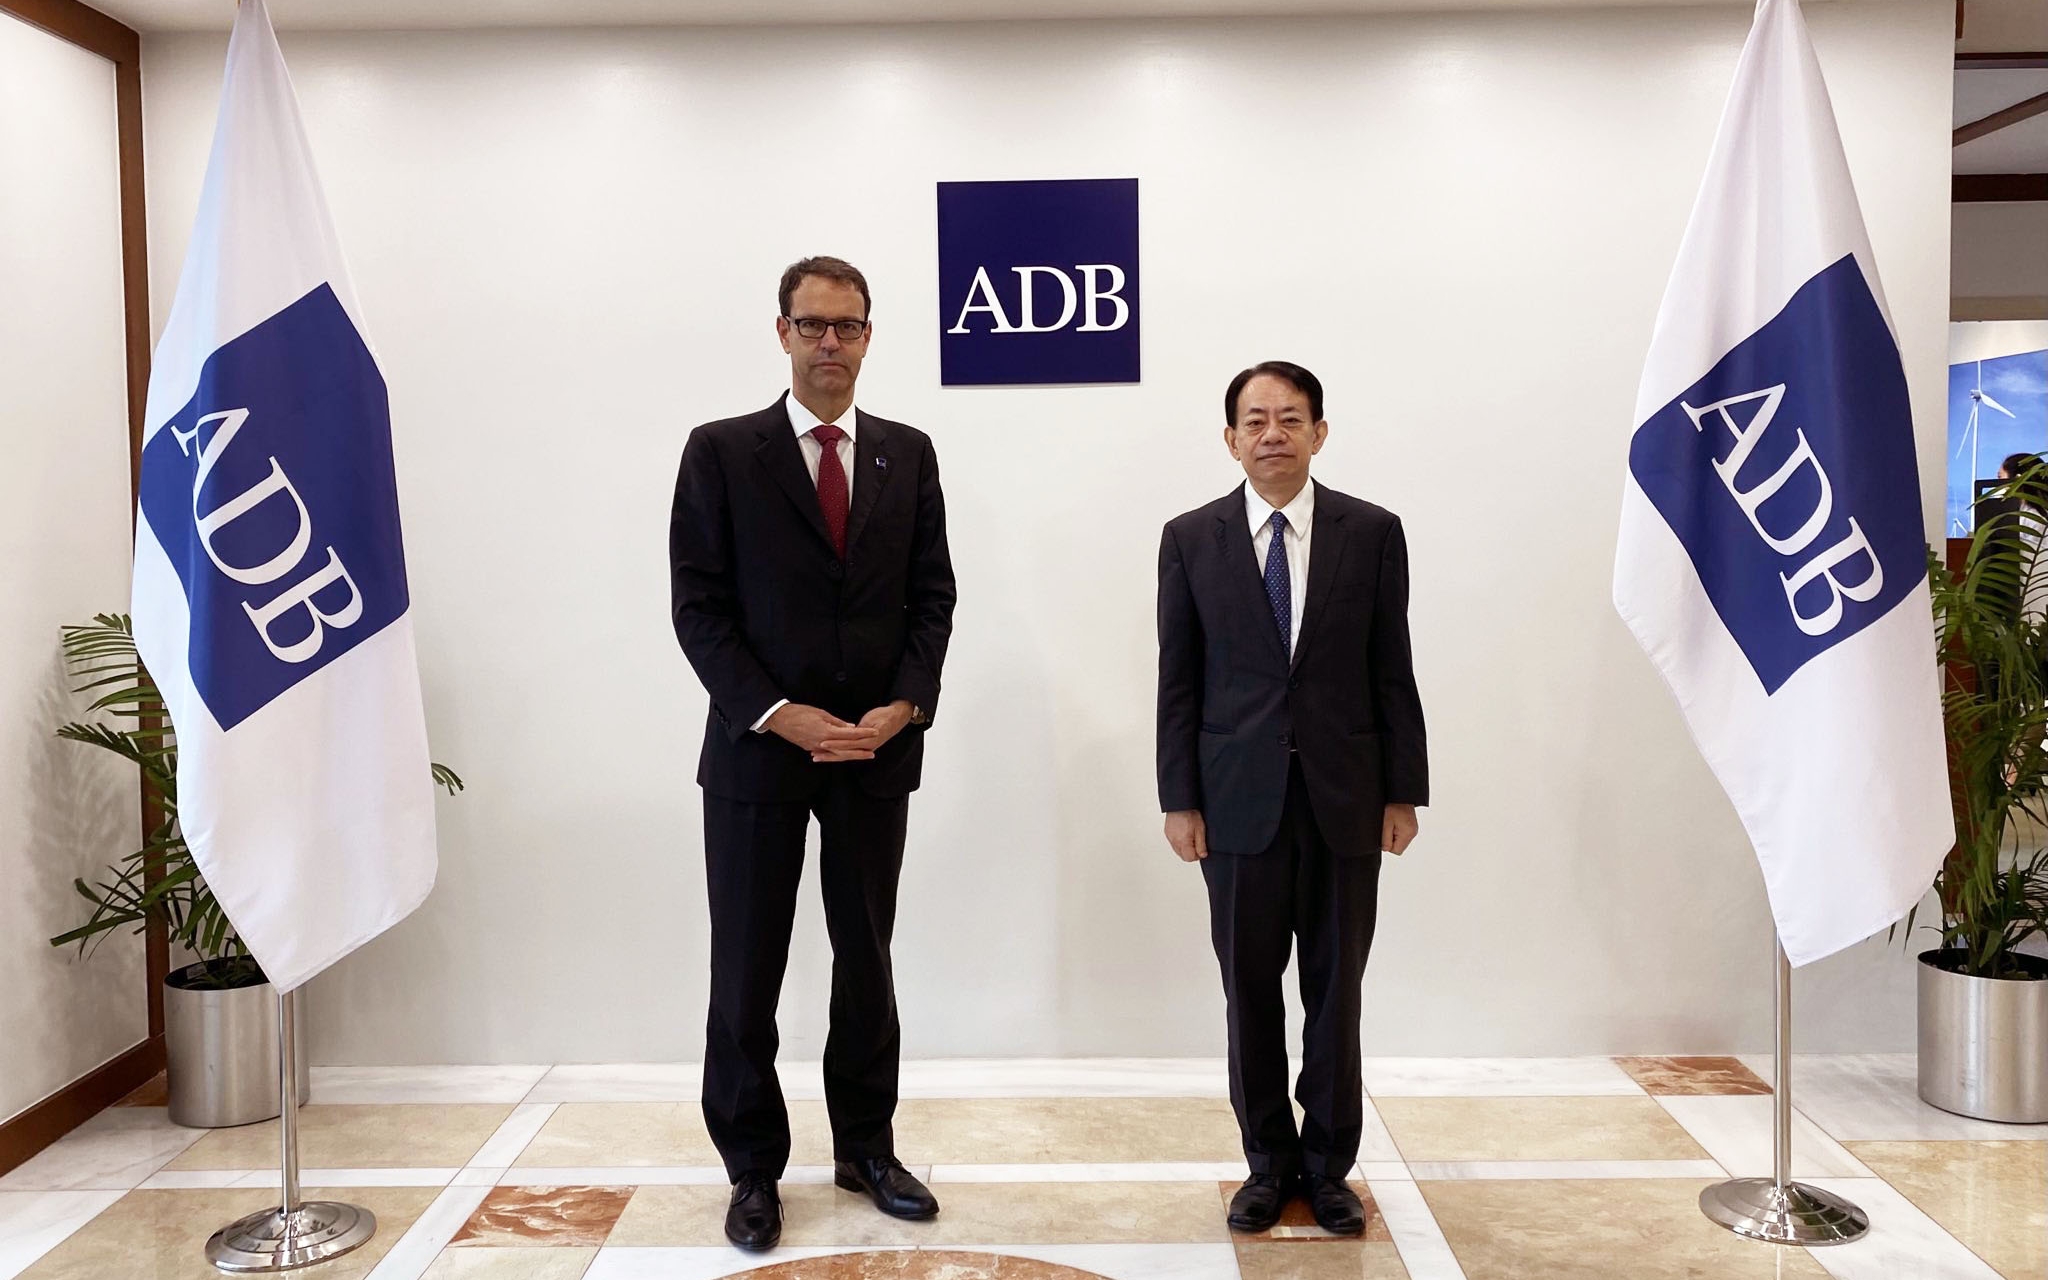 Dans le cadre de l'assemblée annuelle de la Banque asiatique de développement (BAsD), qui s'est tenue en septembre 2022 à Manille, aux Philippines, l'Ambassadeur Dominique Paravicini (SECO), Gouverneur suisse de la BAsD, a rencontré le président de la BAsD, Masatsugu Asakawa.